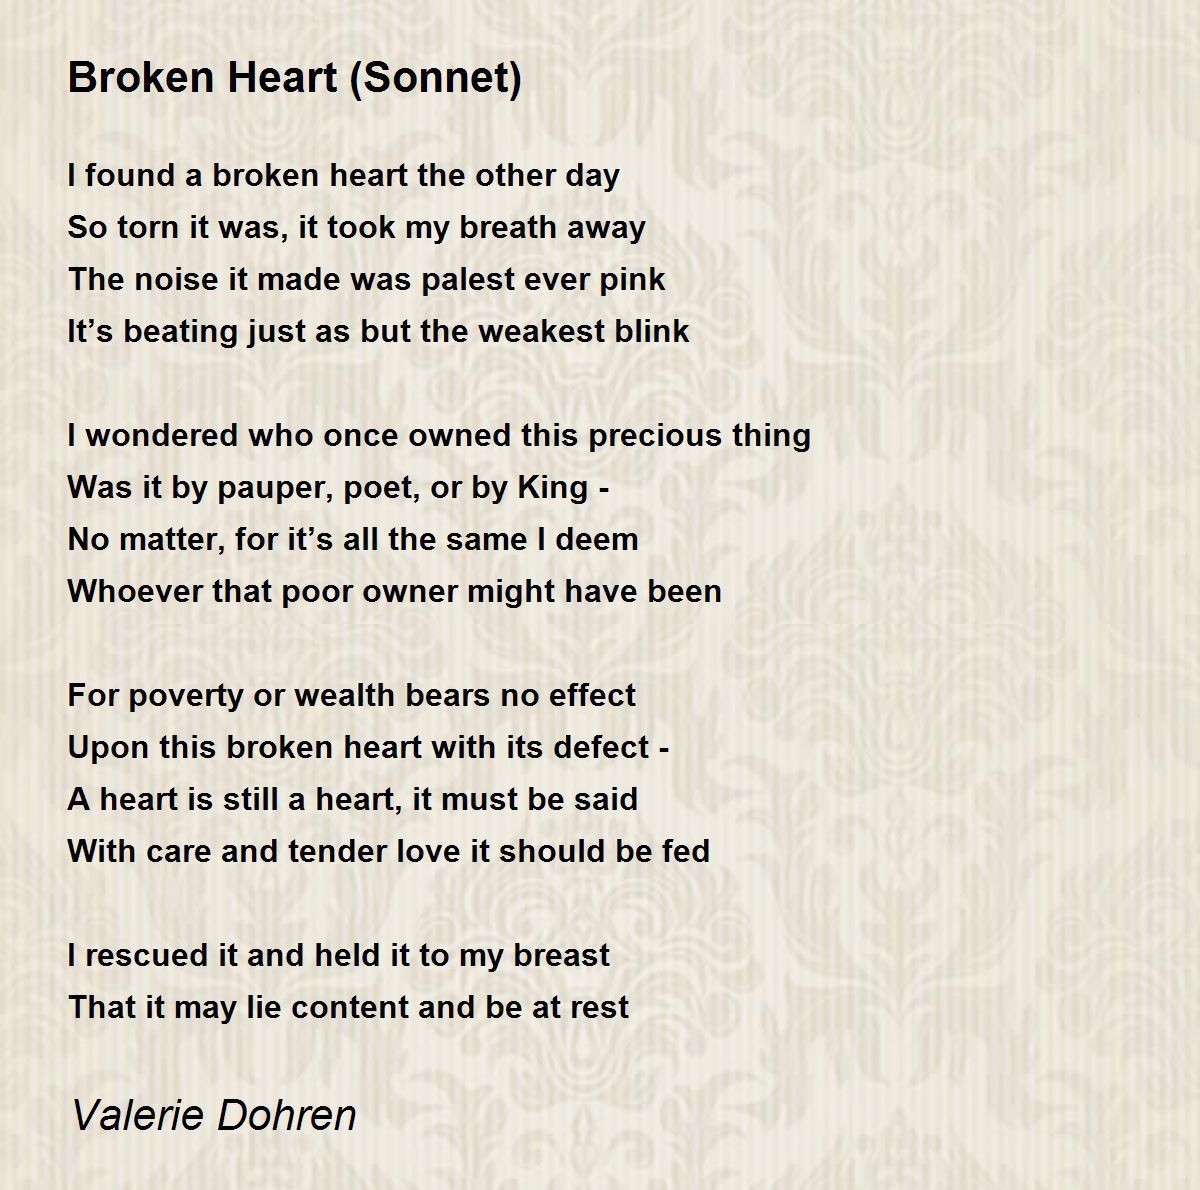 sonnet about broken heart